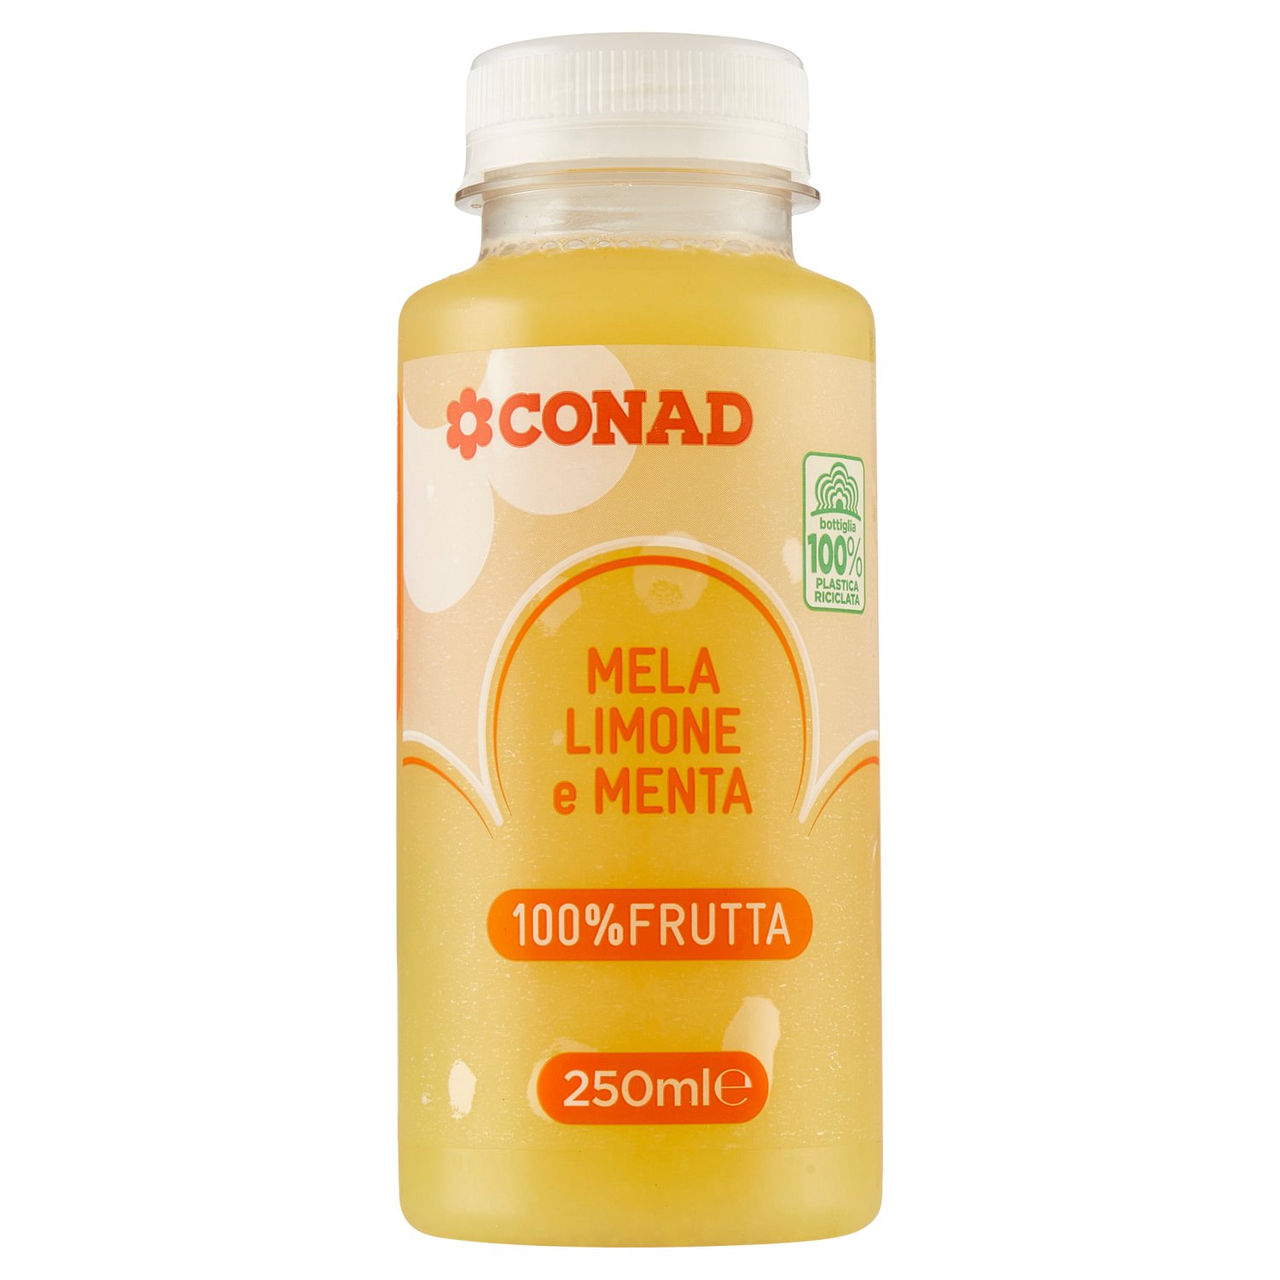 Succo con Mela, Limone e Menta in vendita online